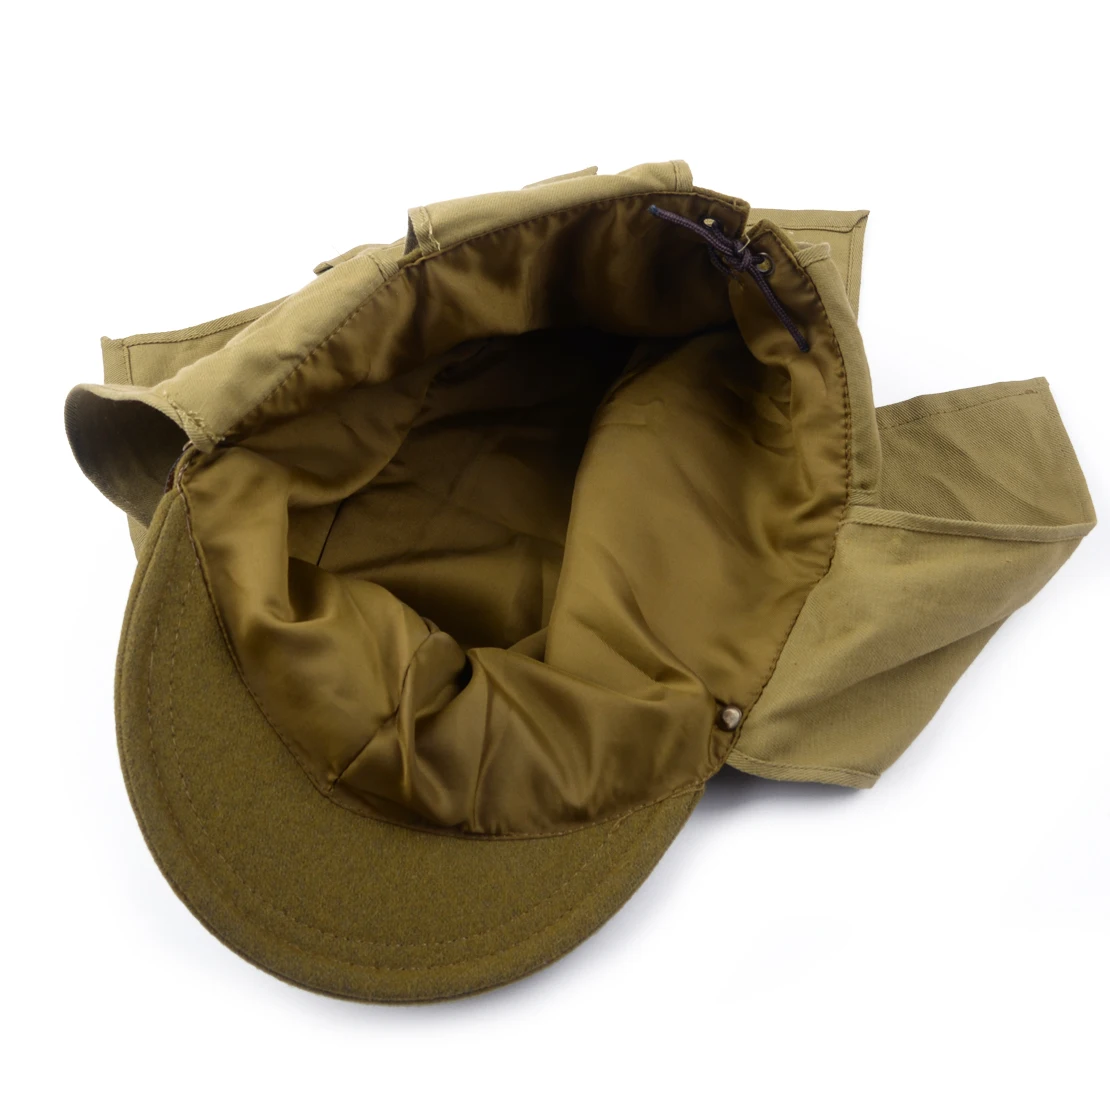 Зеленая армейская полевая Шерстяная кепка Второй мировой войны WW2 японская армейская солдатская шляпа военный костюм аксессуар для мужчин